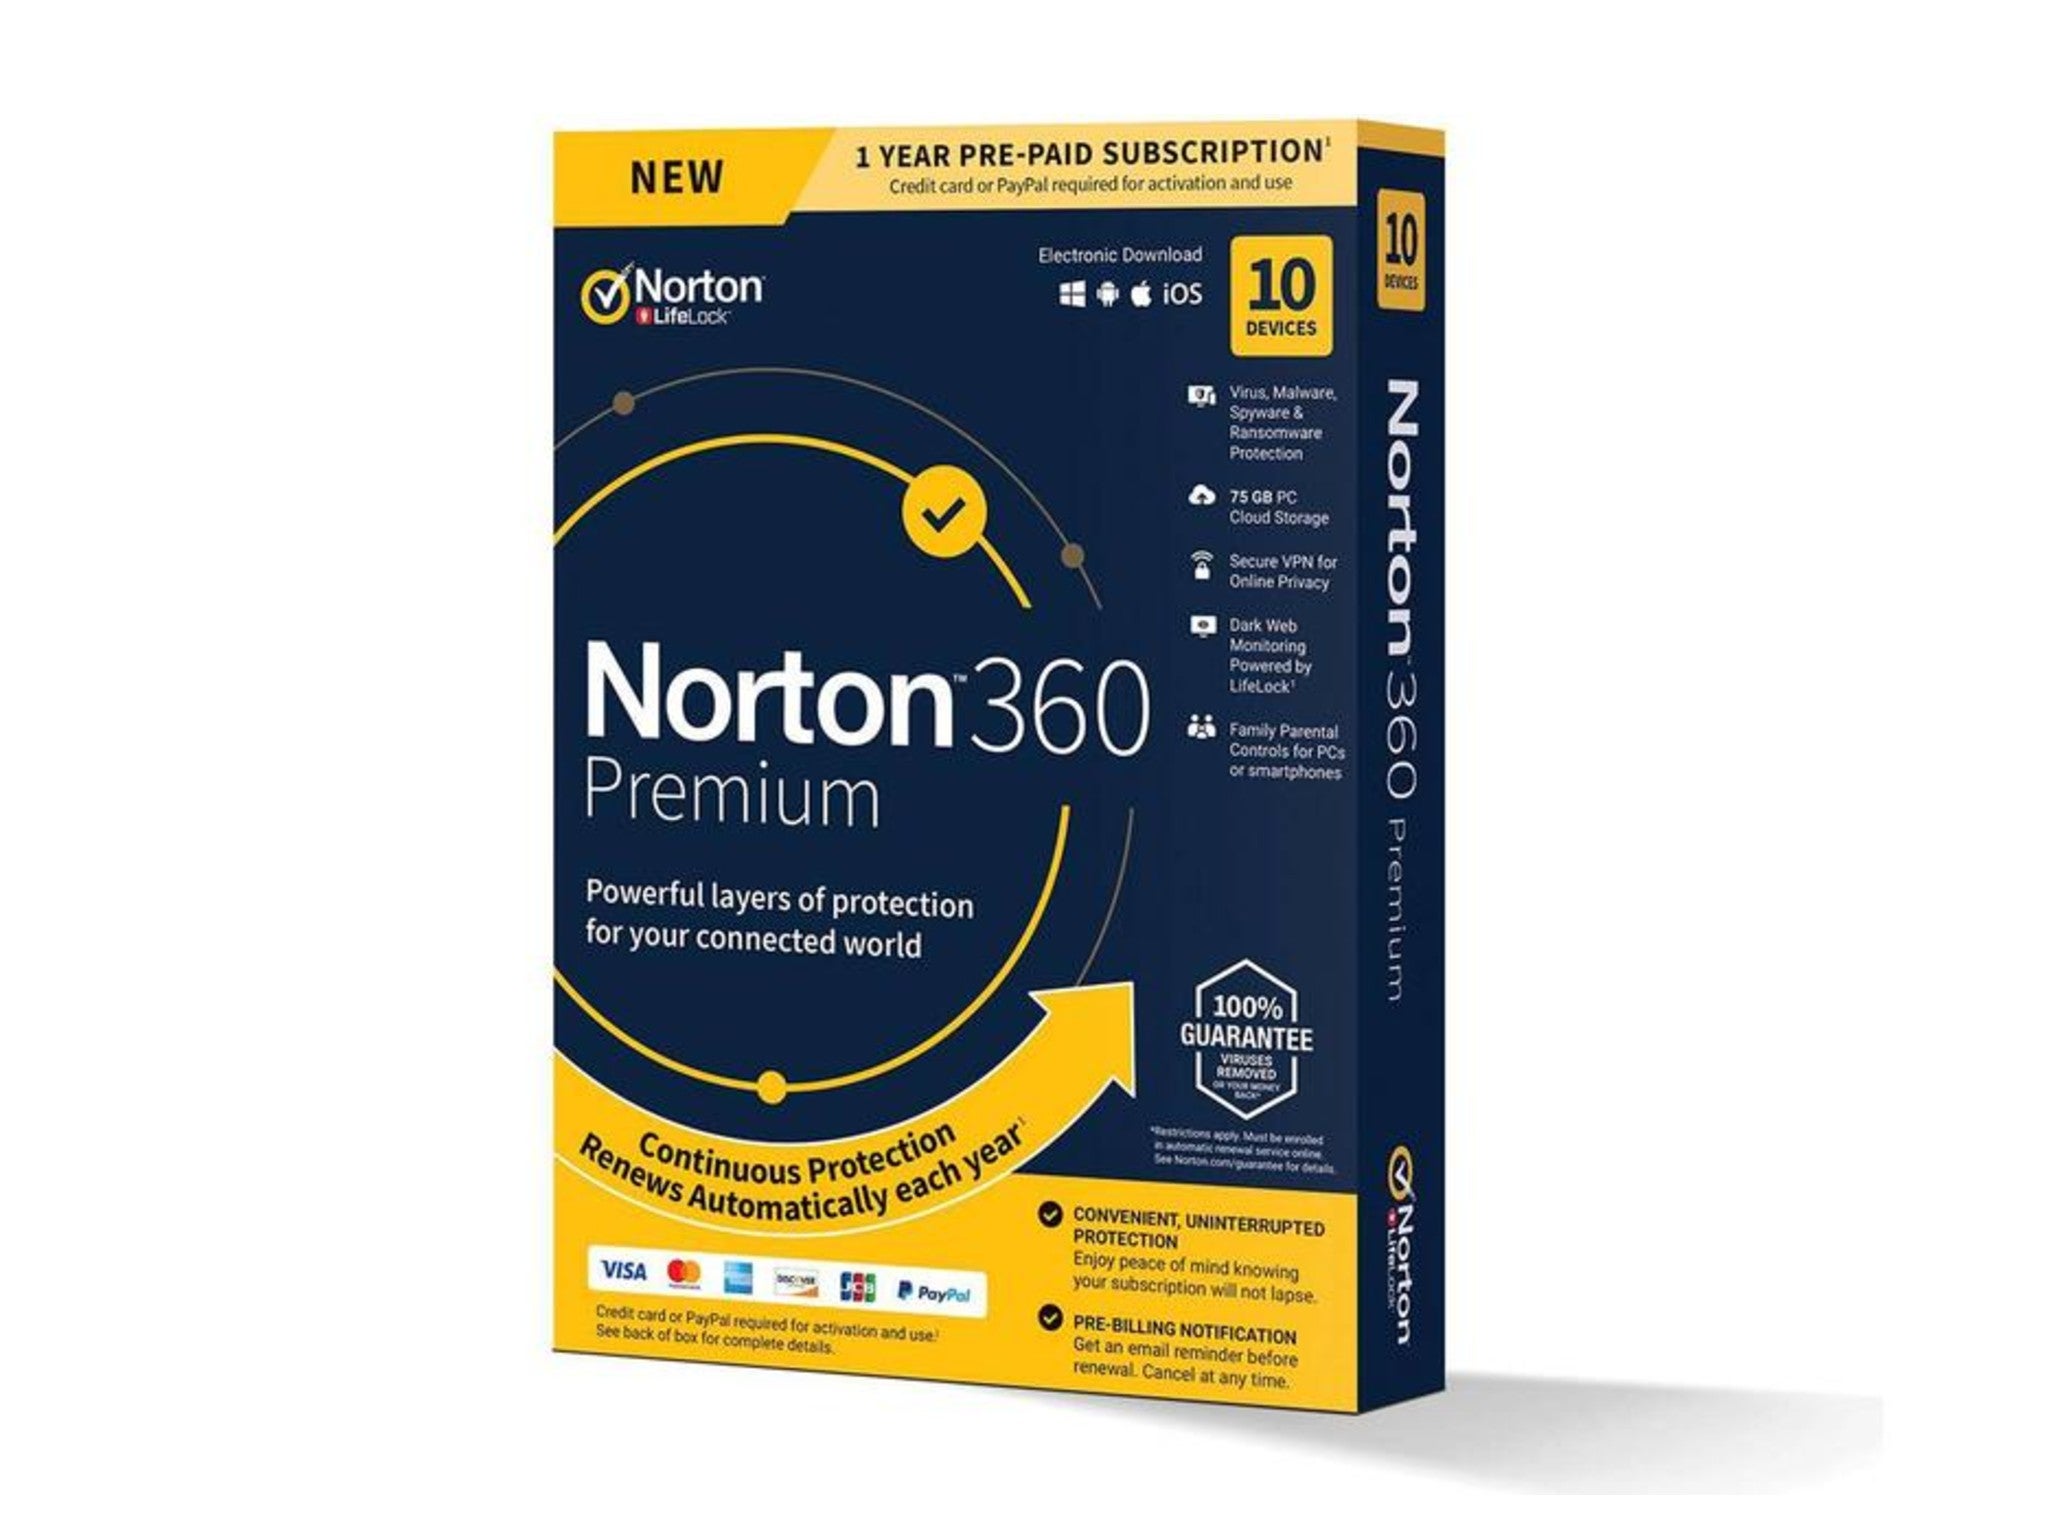 ¿Cuánto cuesta a Norton 360 UK?